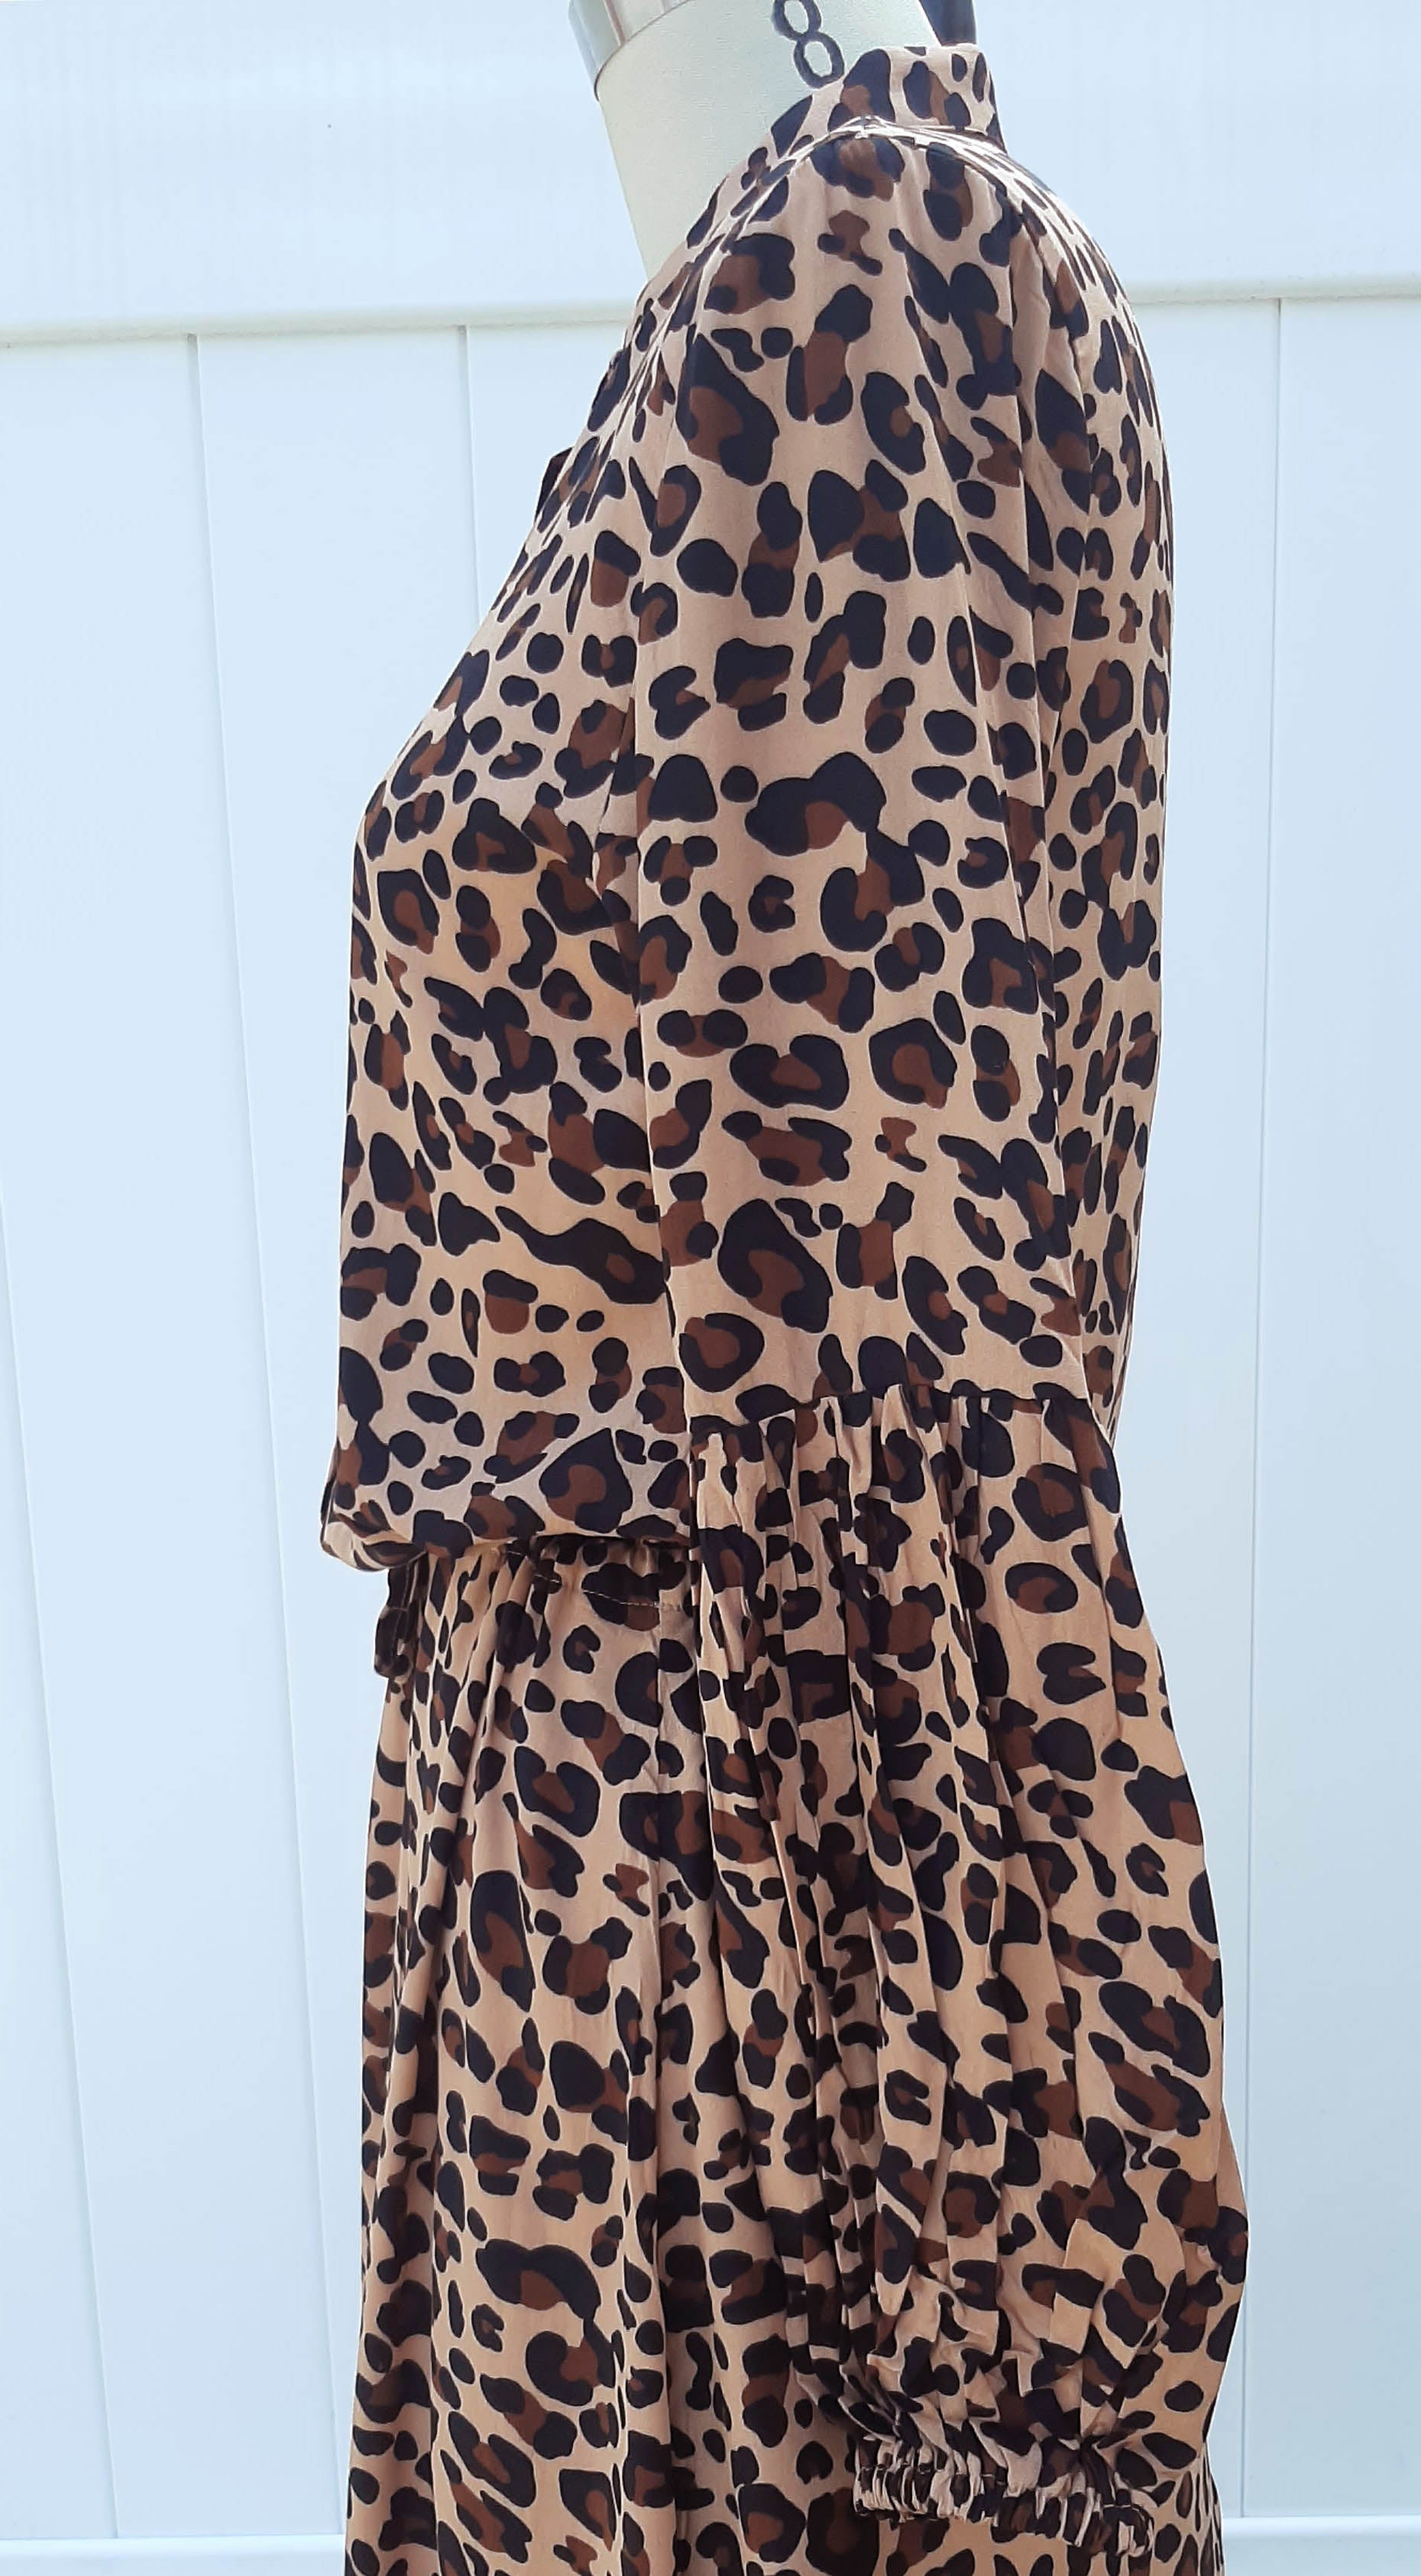 Leopard Print Drawstring Dress